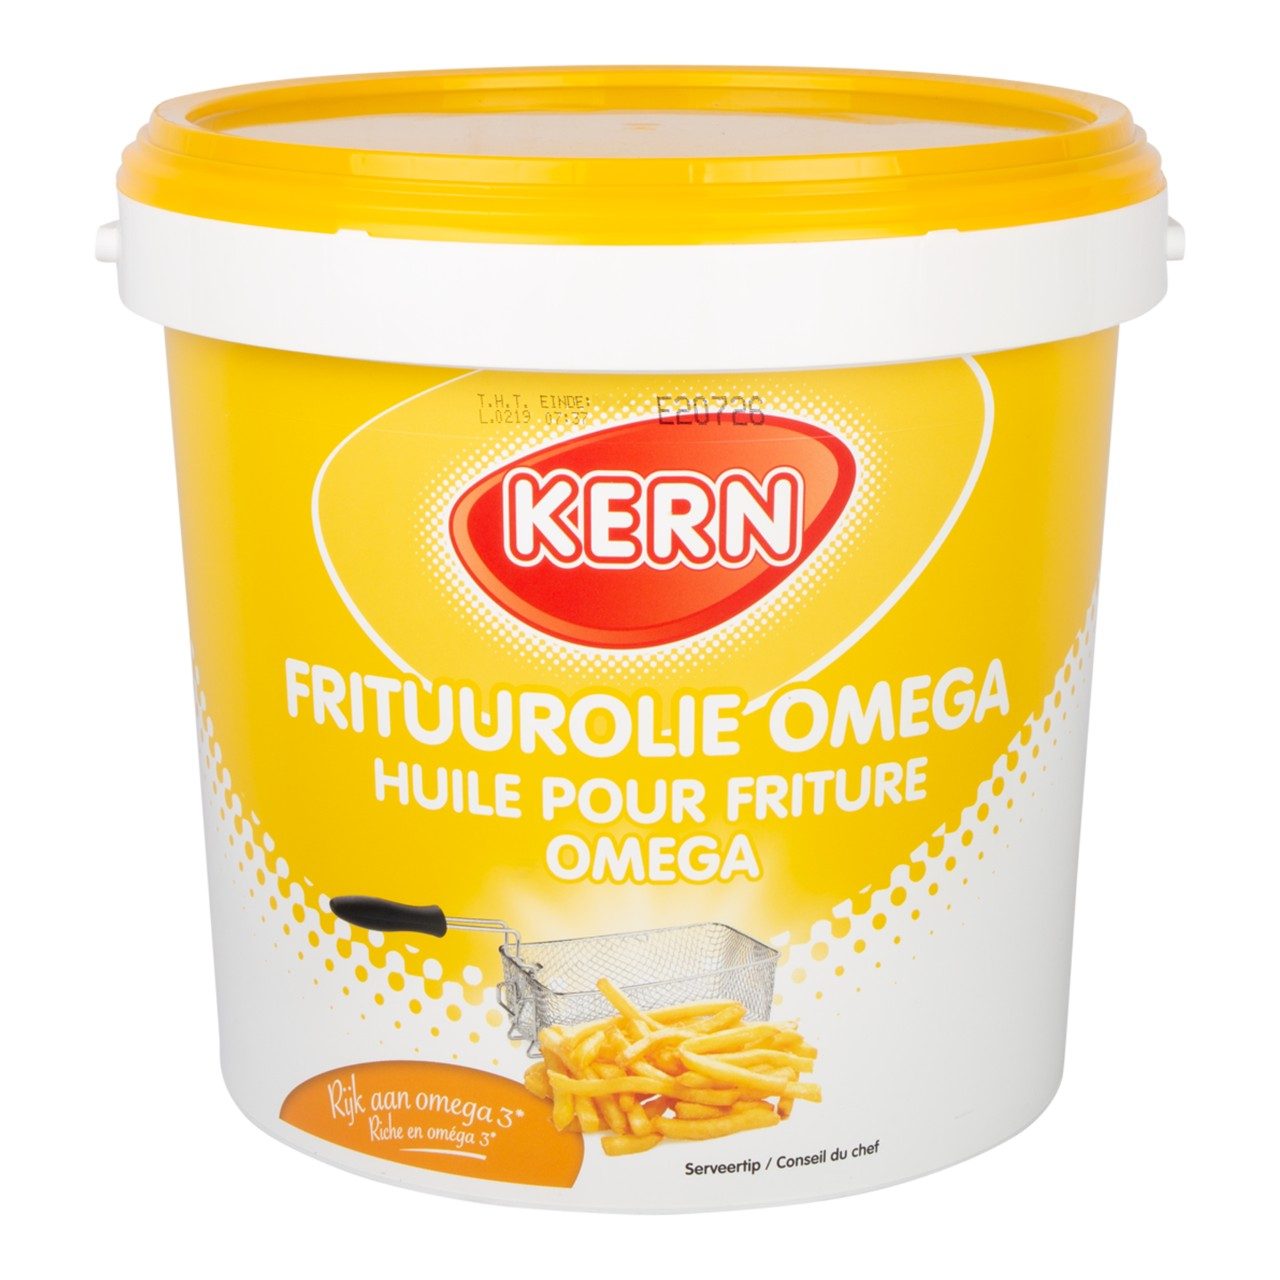 Frituurolie omega